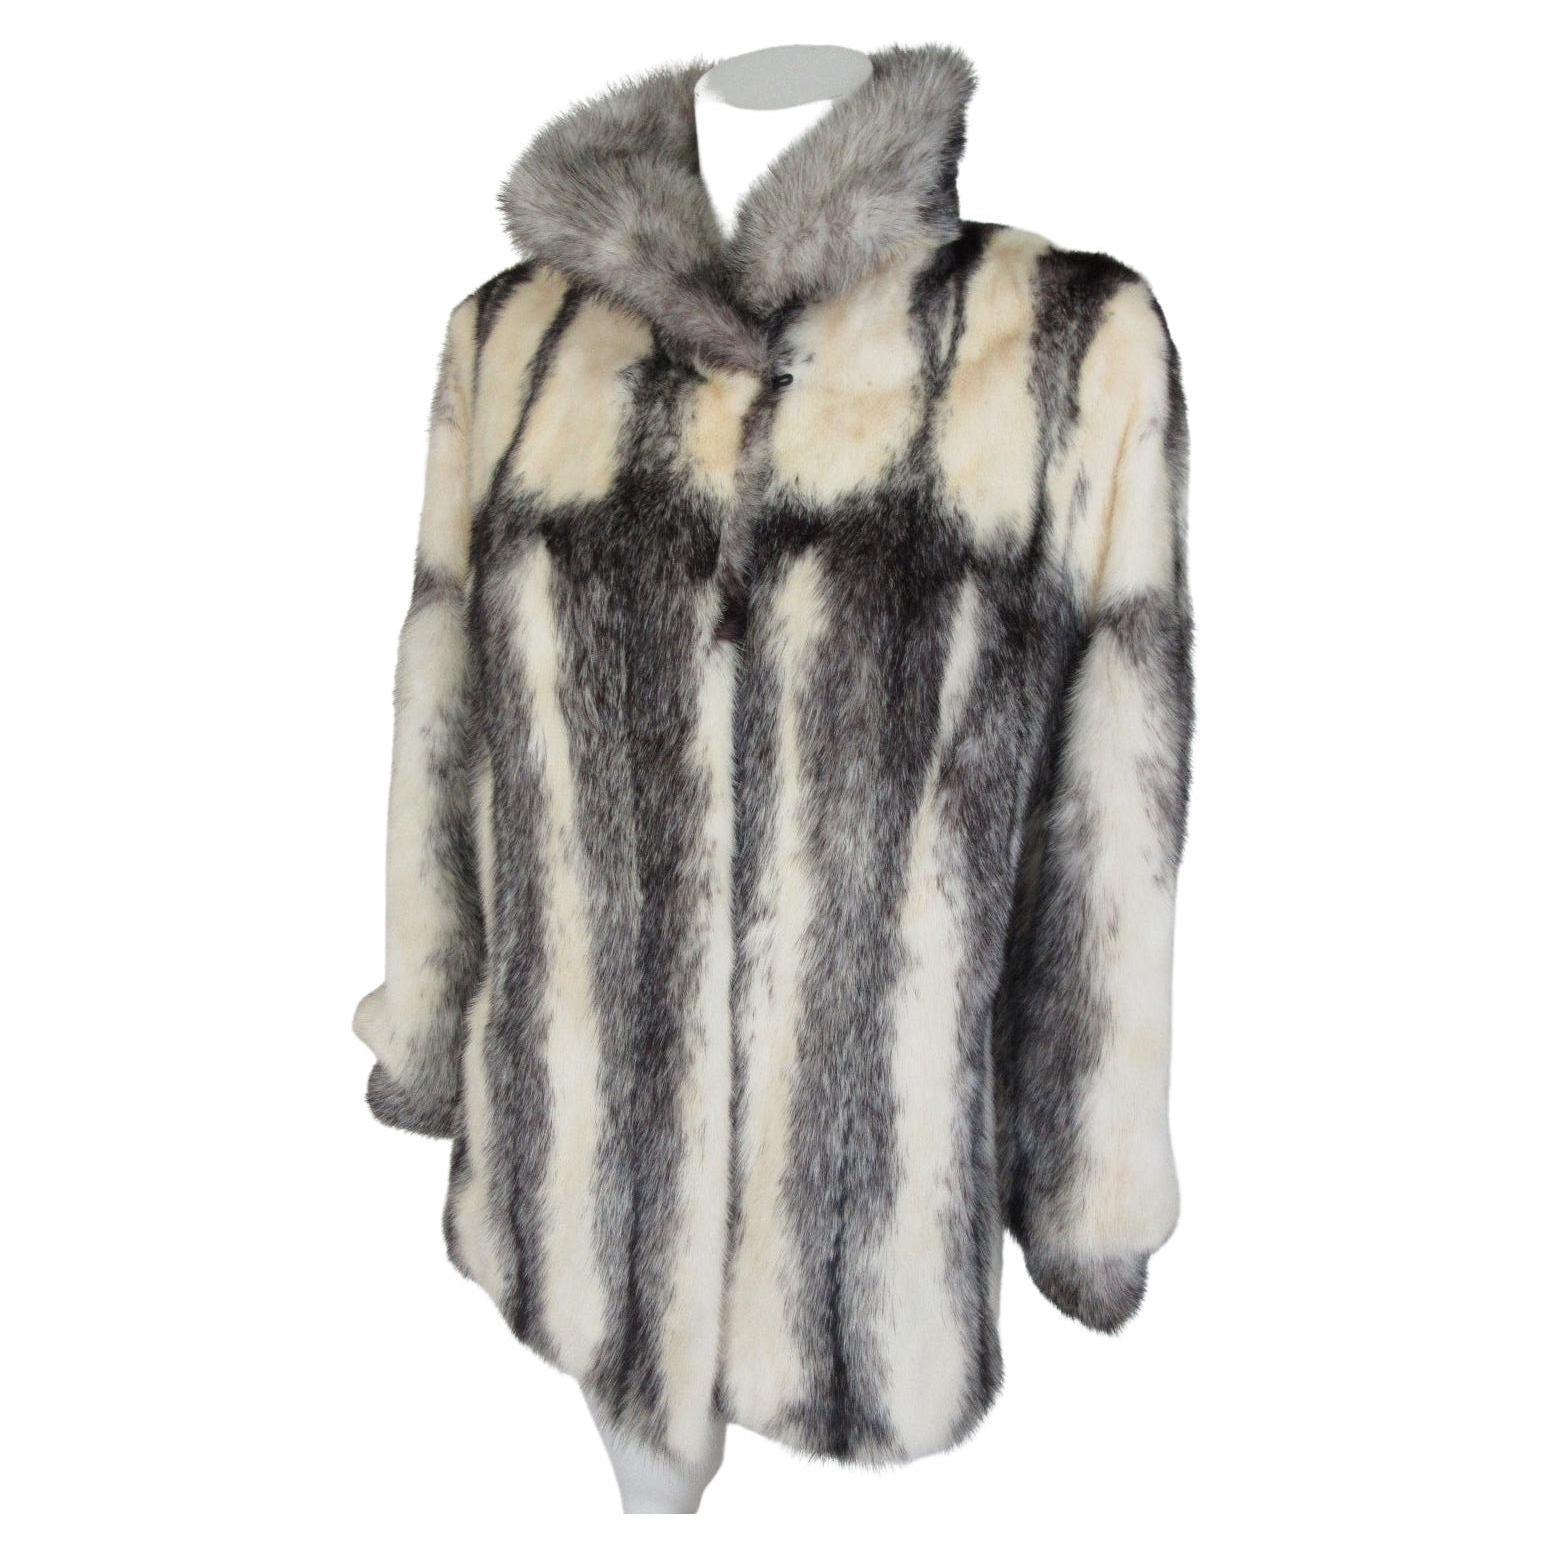 Exclusive Kohinoor Cross Mink Fur Coat